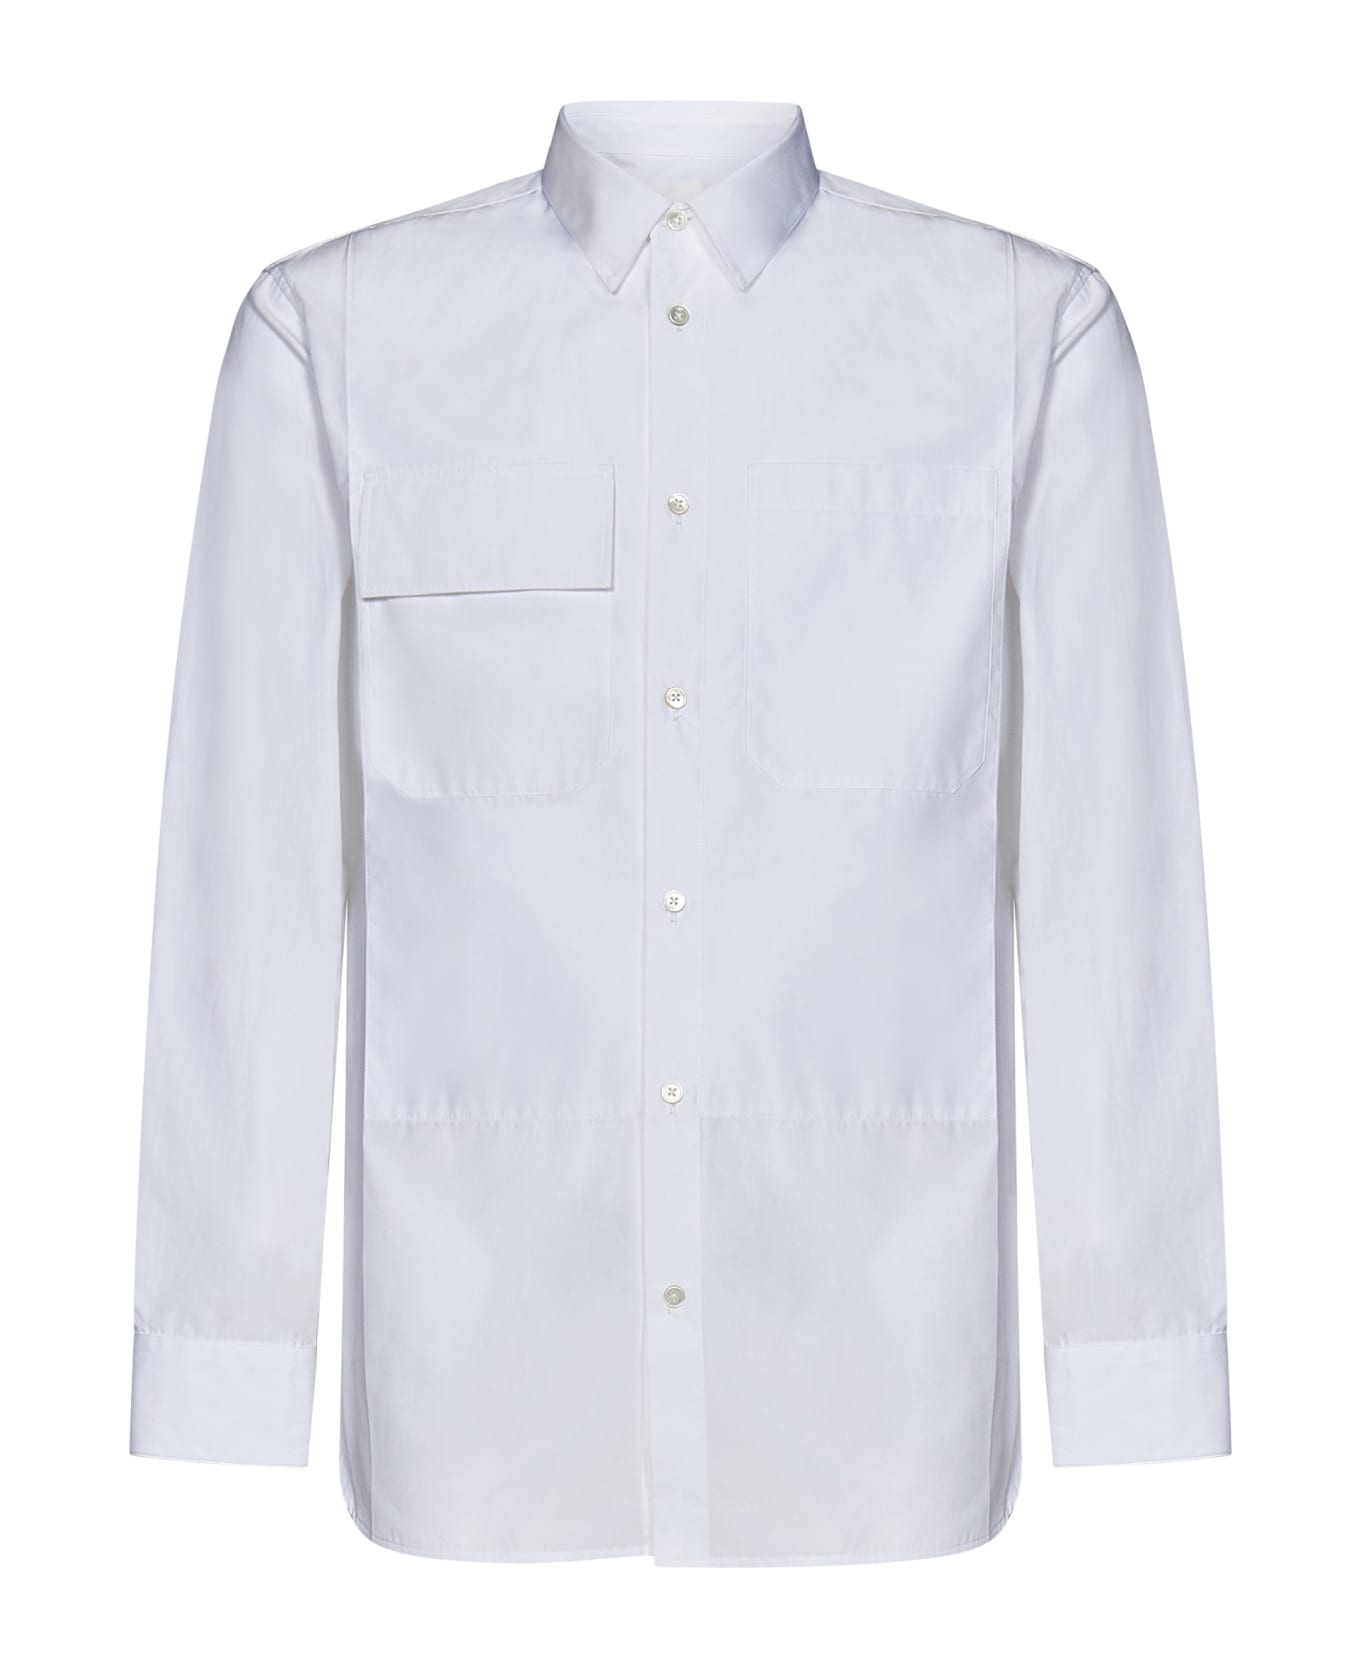 Jil Sander Buttoned Long-sleeved Shirt - White シャツ